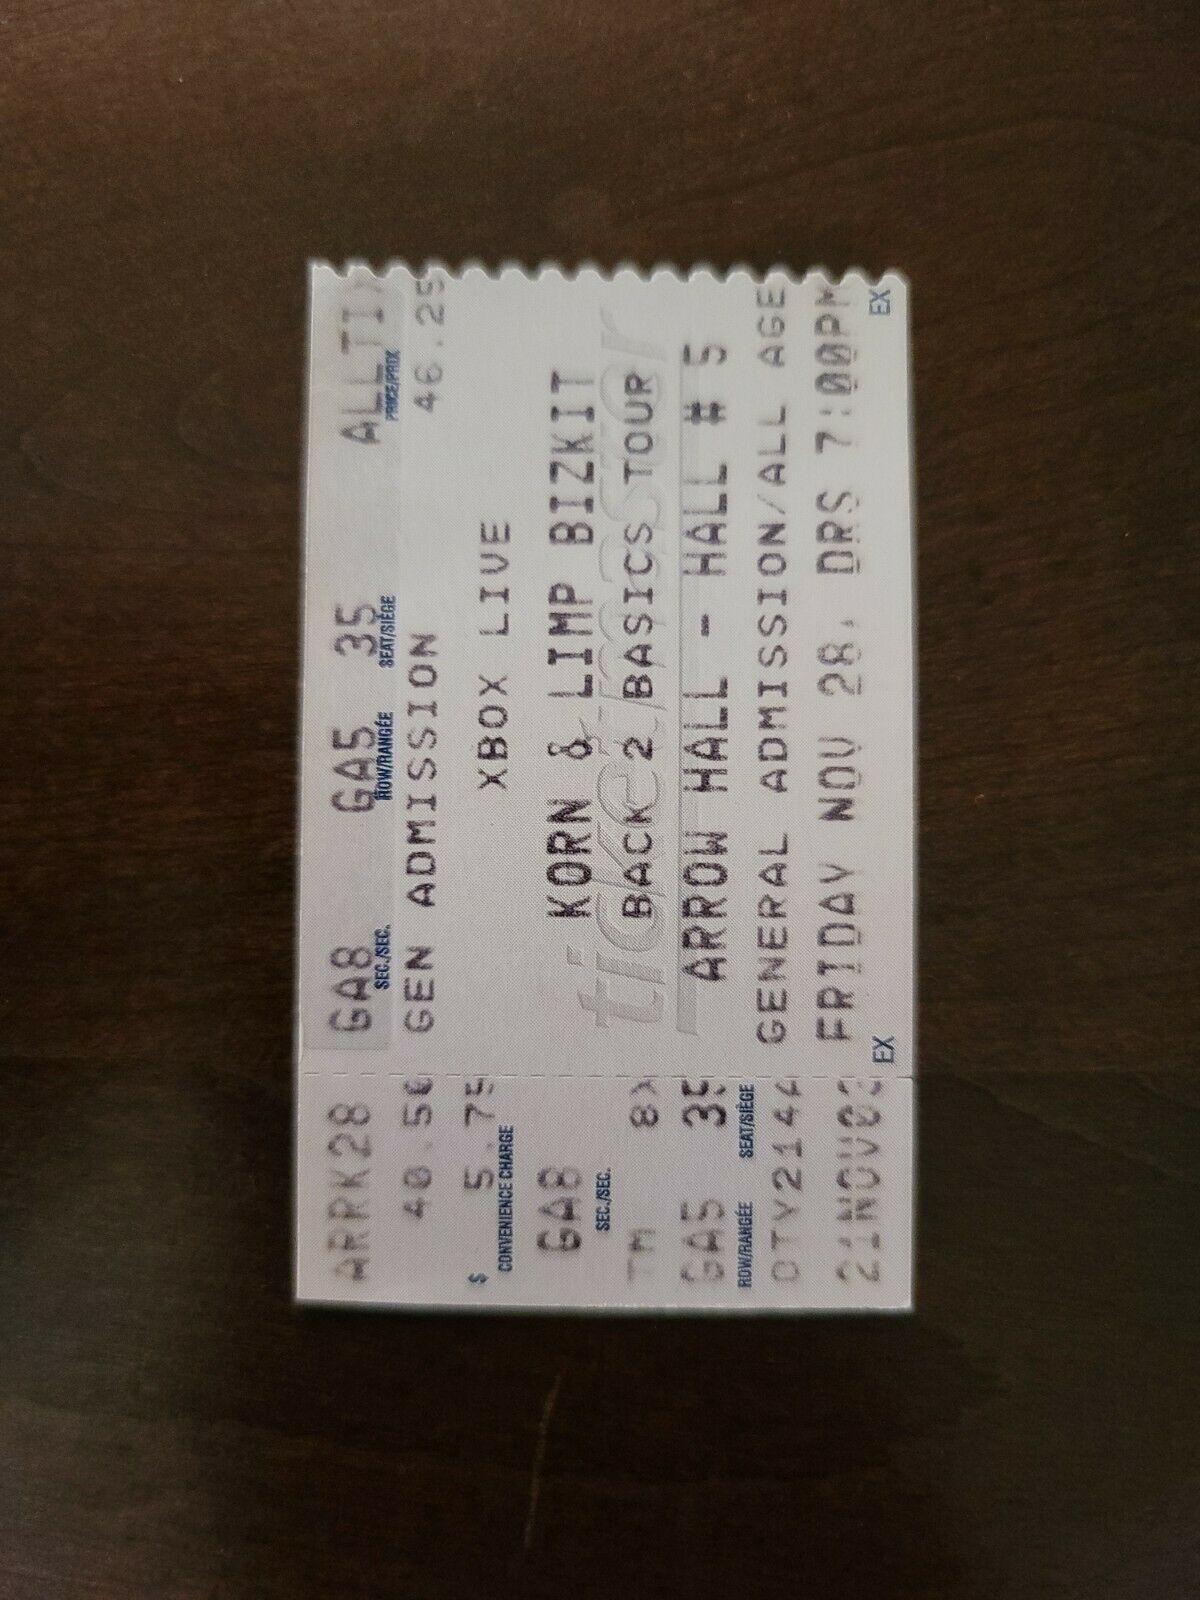 Korn Limp Bizkit 2003, Toronto Arrow Hall Original Concert Ticket Stub